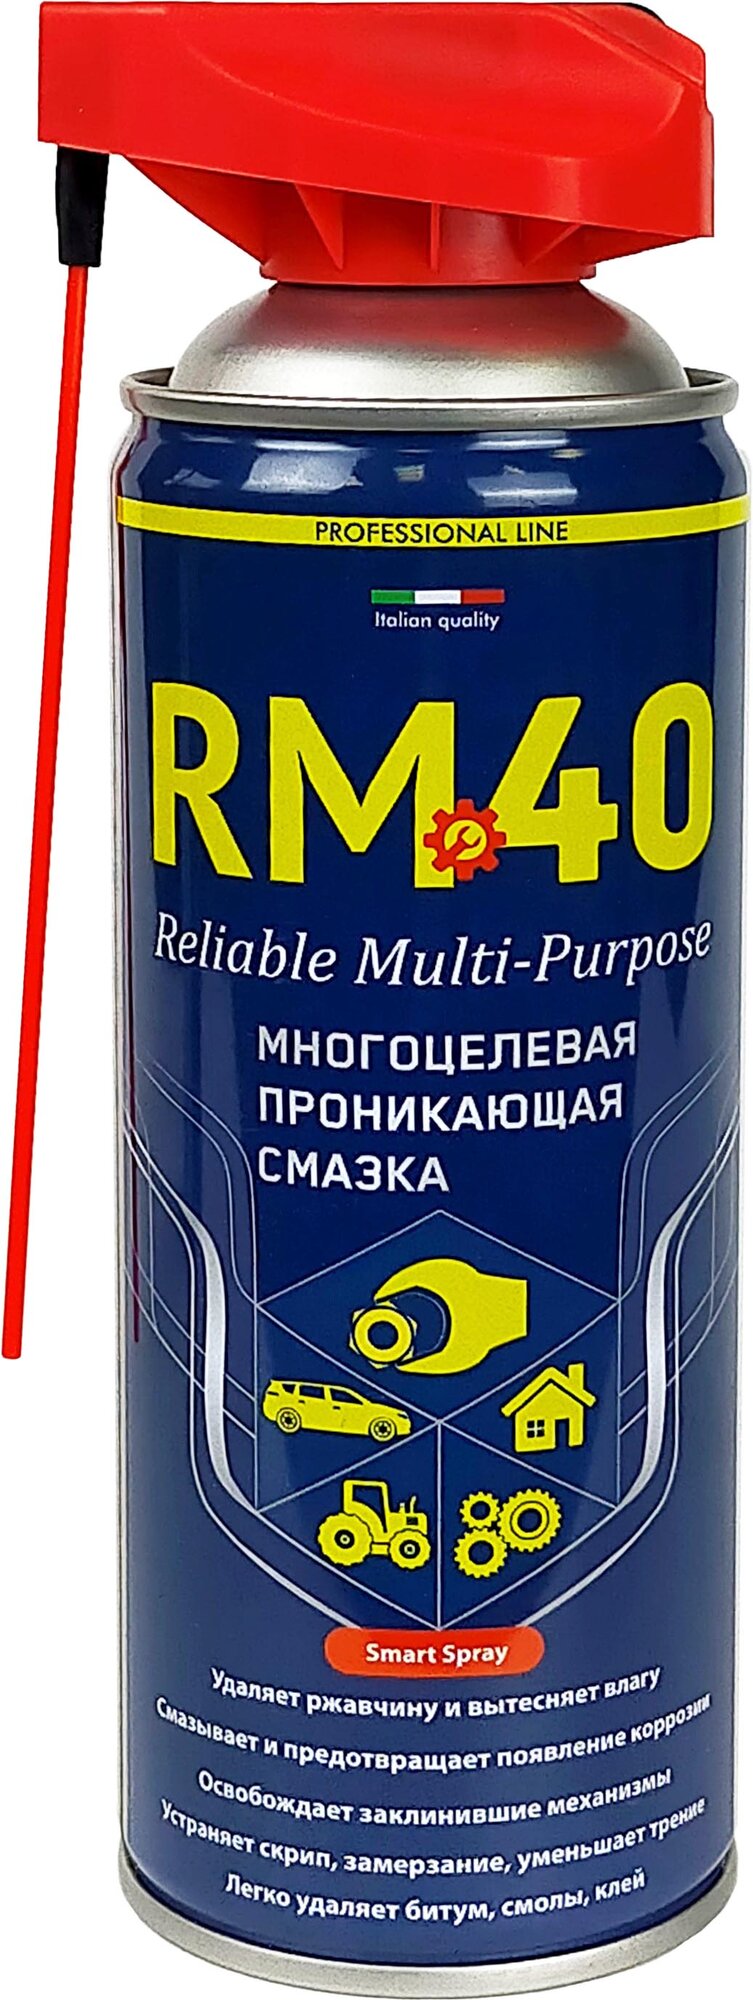 Смазка проникающая для автомобиля RM-40 аналог вд 40 wd40 (450ml)